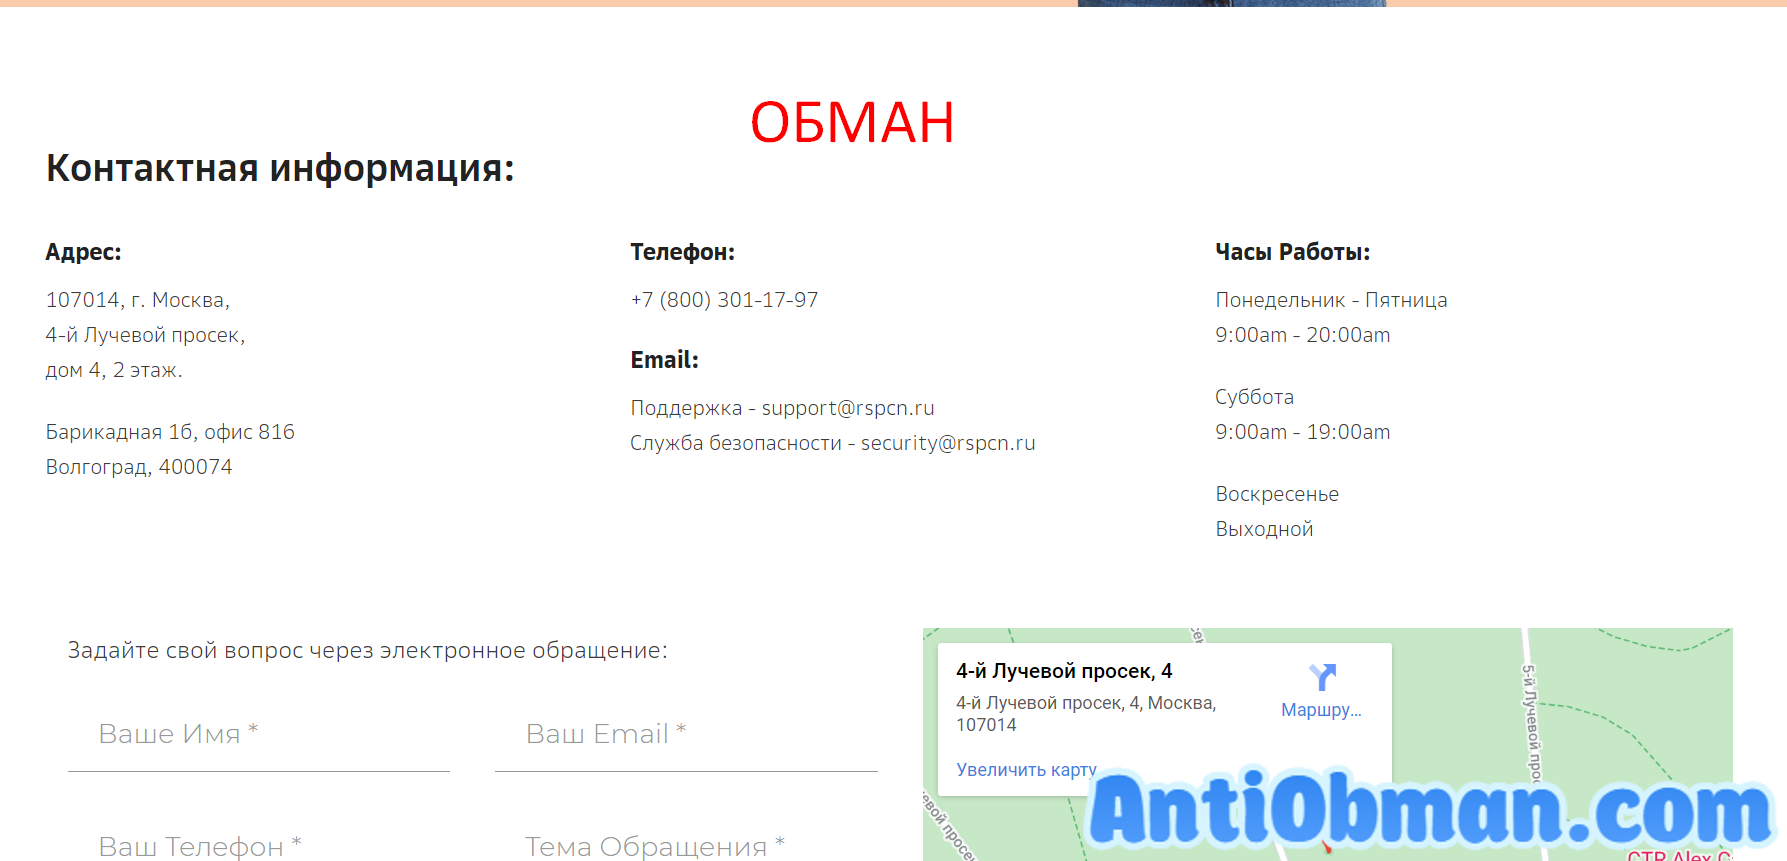 Региональная служба подбора кредитов населению (rspcn.ru) - отзывы и проверка